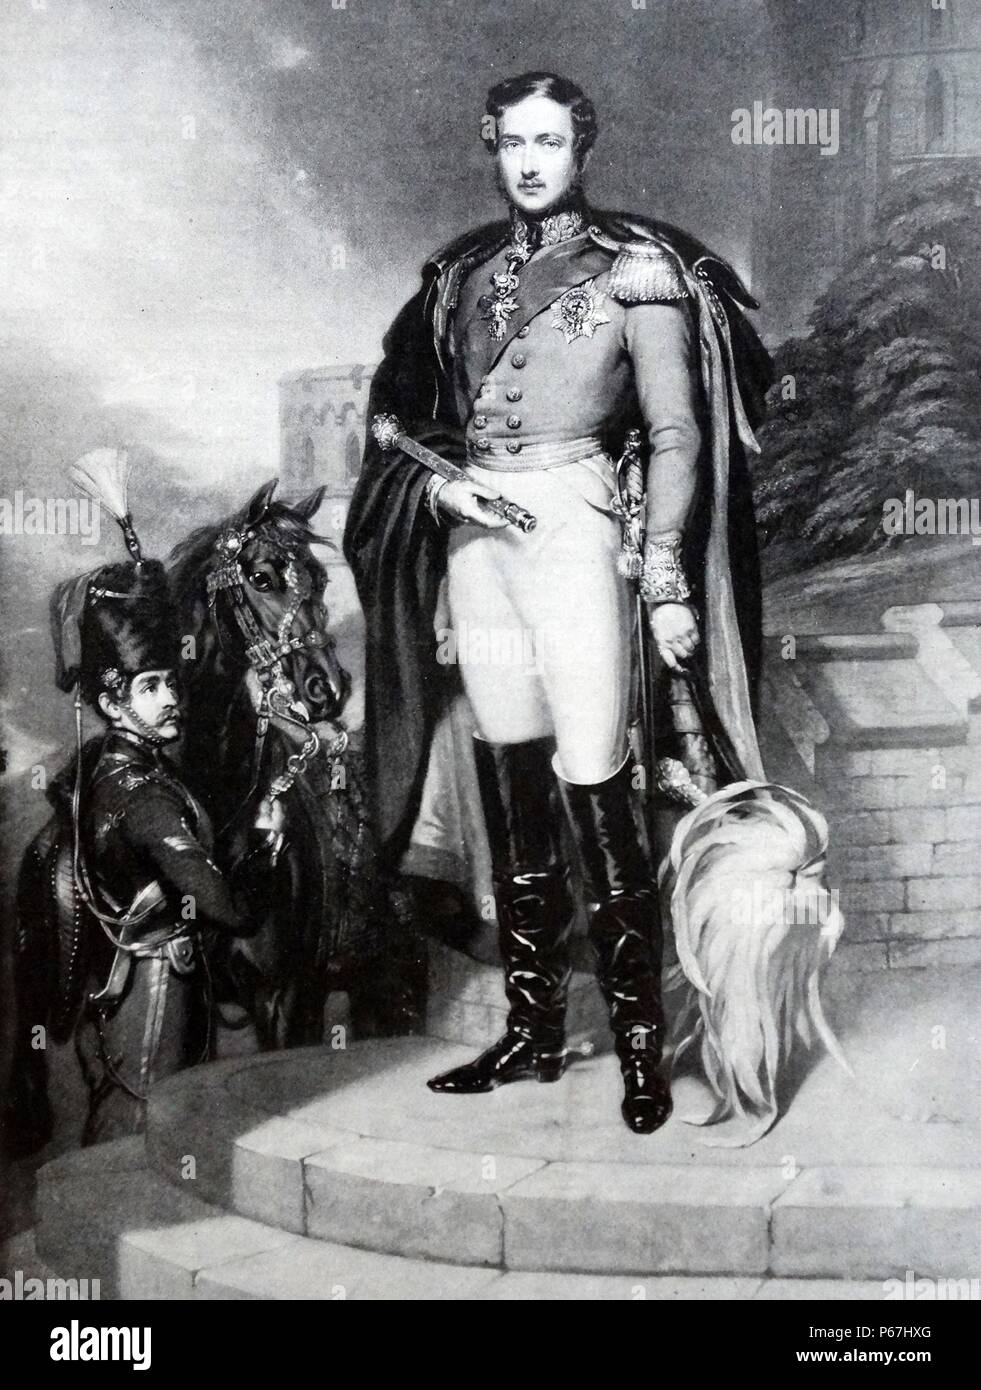 Le Prince Albert de Saxe-cobourg et Gotha (le Prince Consort). 26 août 1819 - 14 décembre 1861) époux de la reine Victoria du Royaume-Uni de Grande-Bretagne et d'Irlande. Banque D'Images